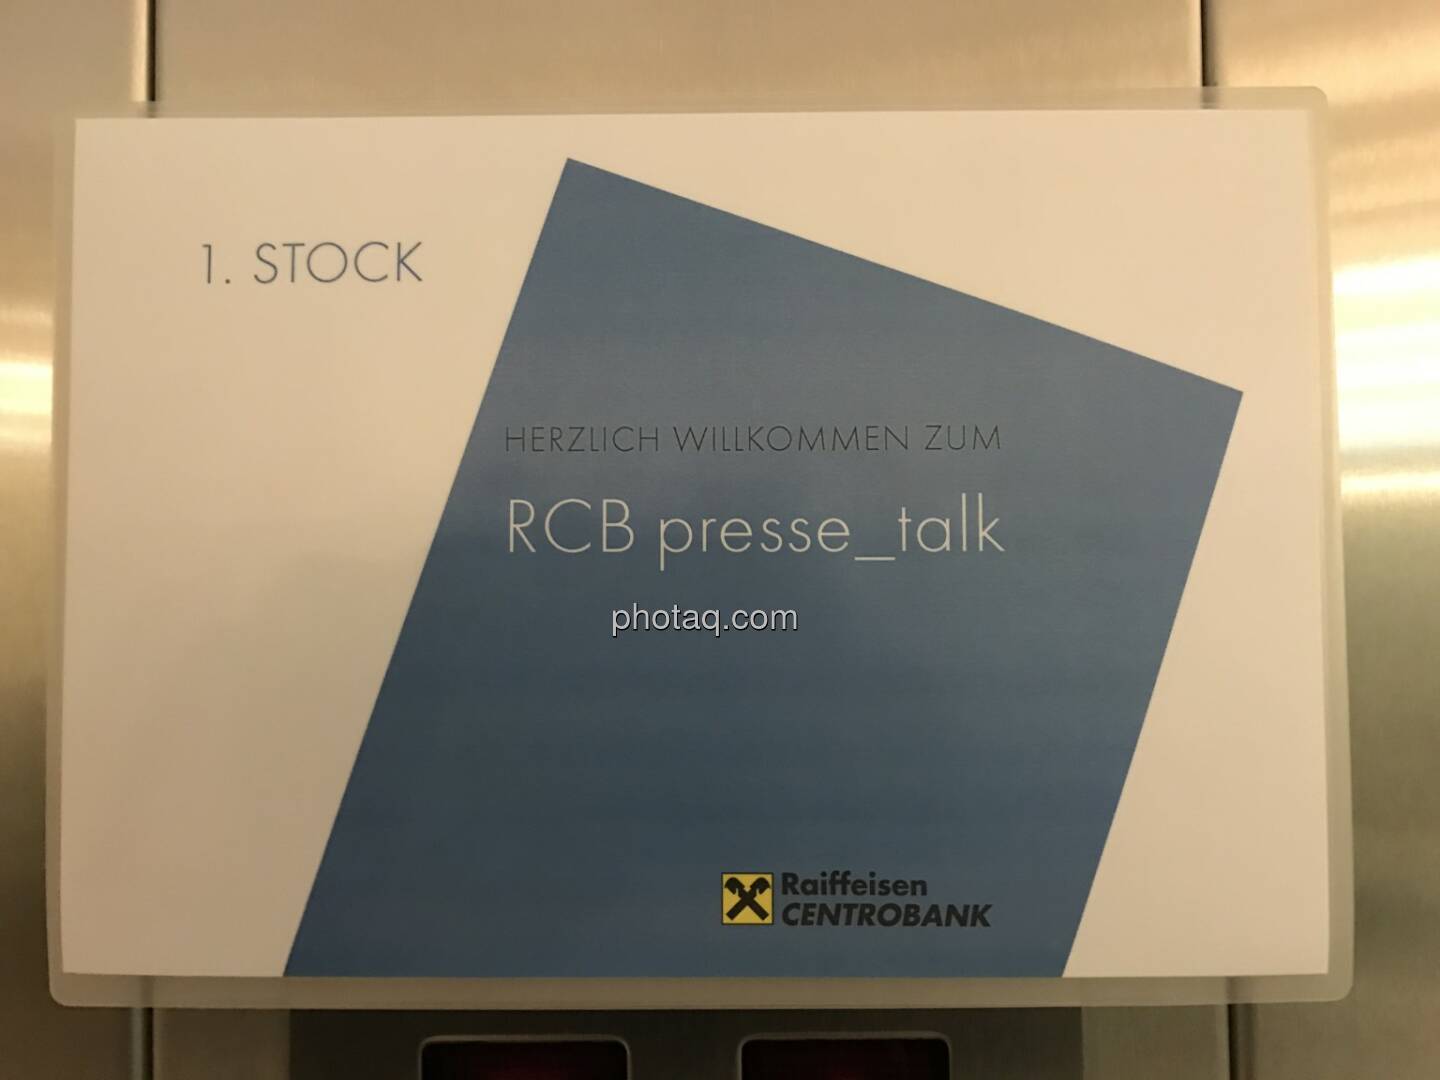 RCB presse_talk